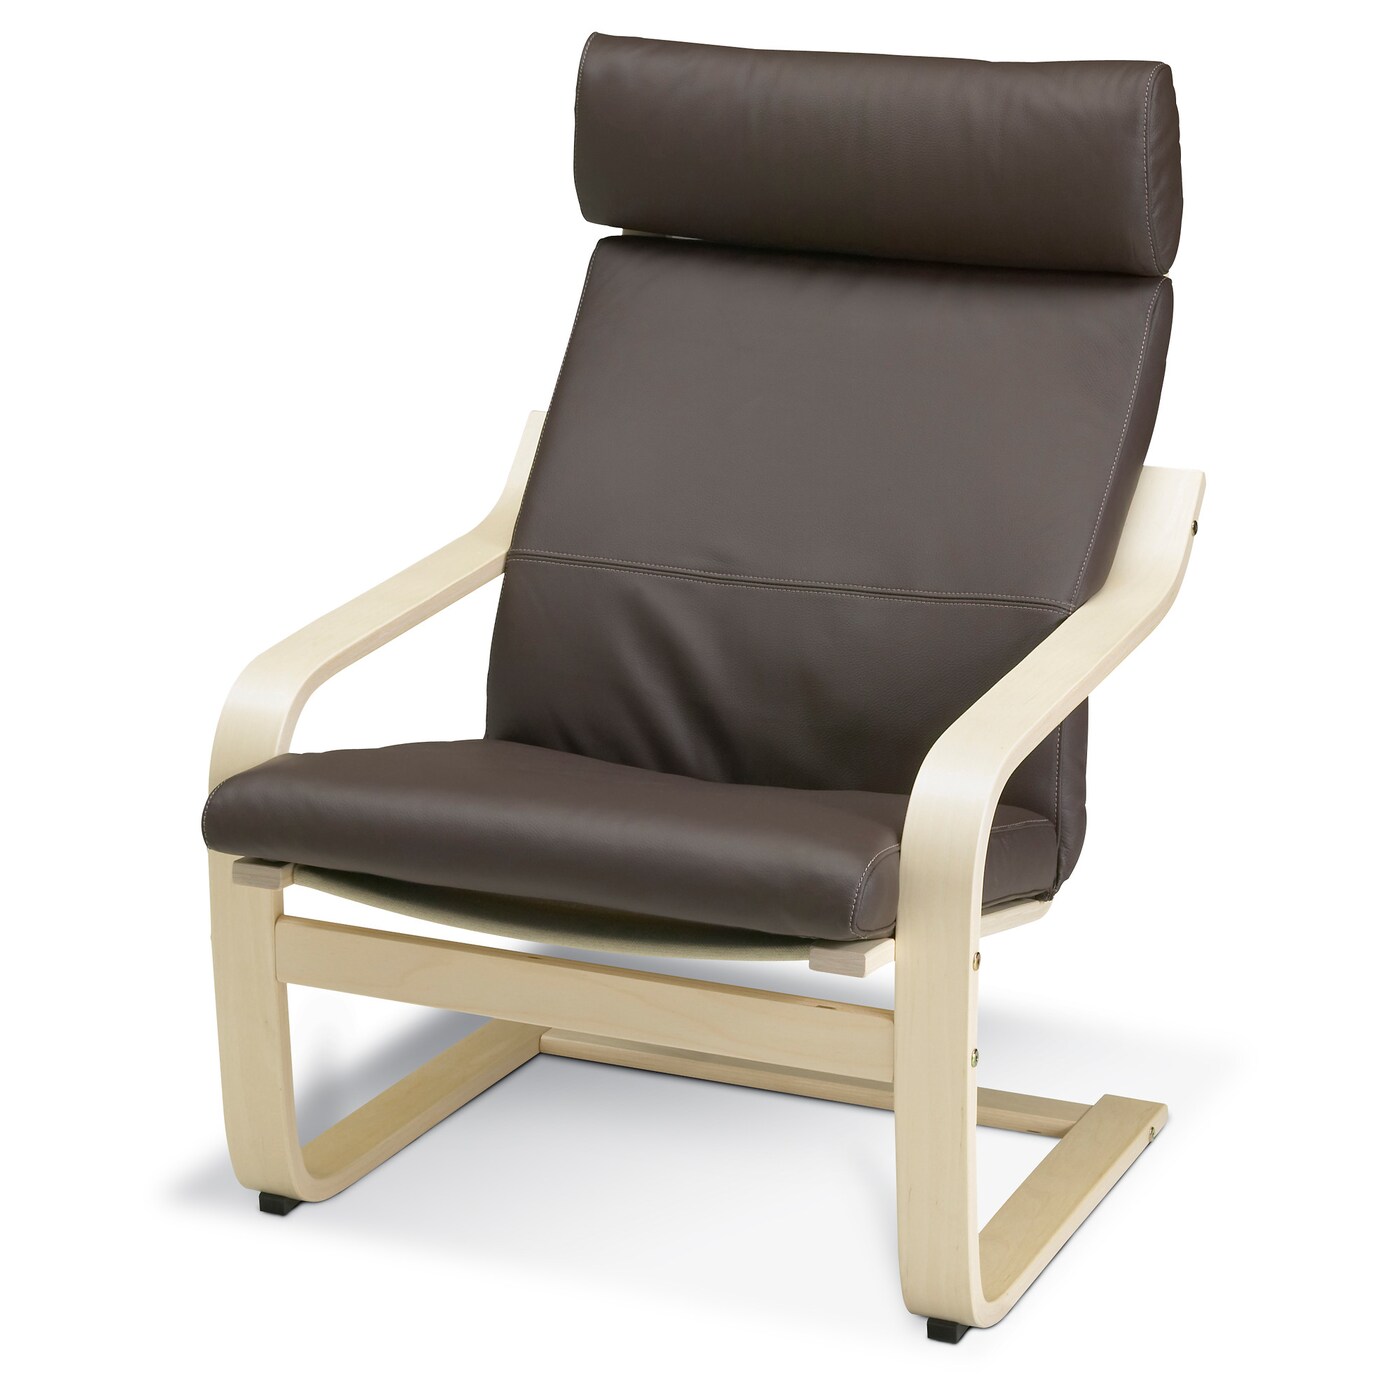 Кресло - IKEA POÄNG/POANG/ПОЭНГ ИКЕА, 68х82х100 см, коричневый/бежевый